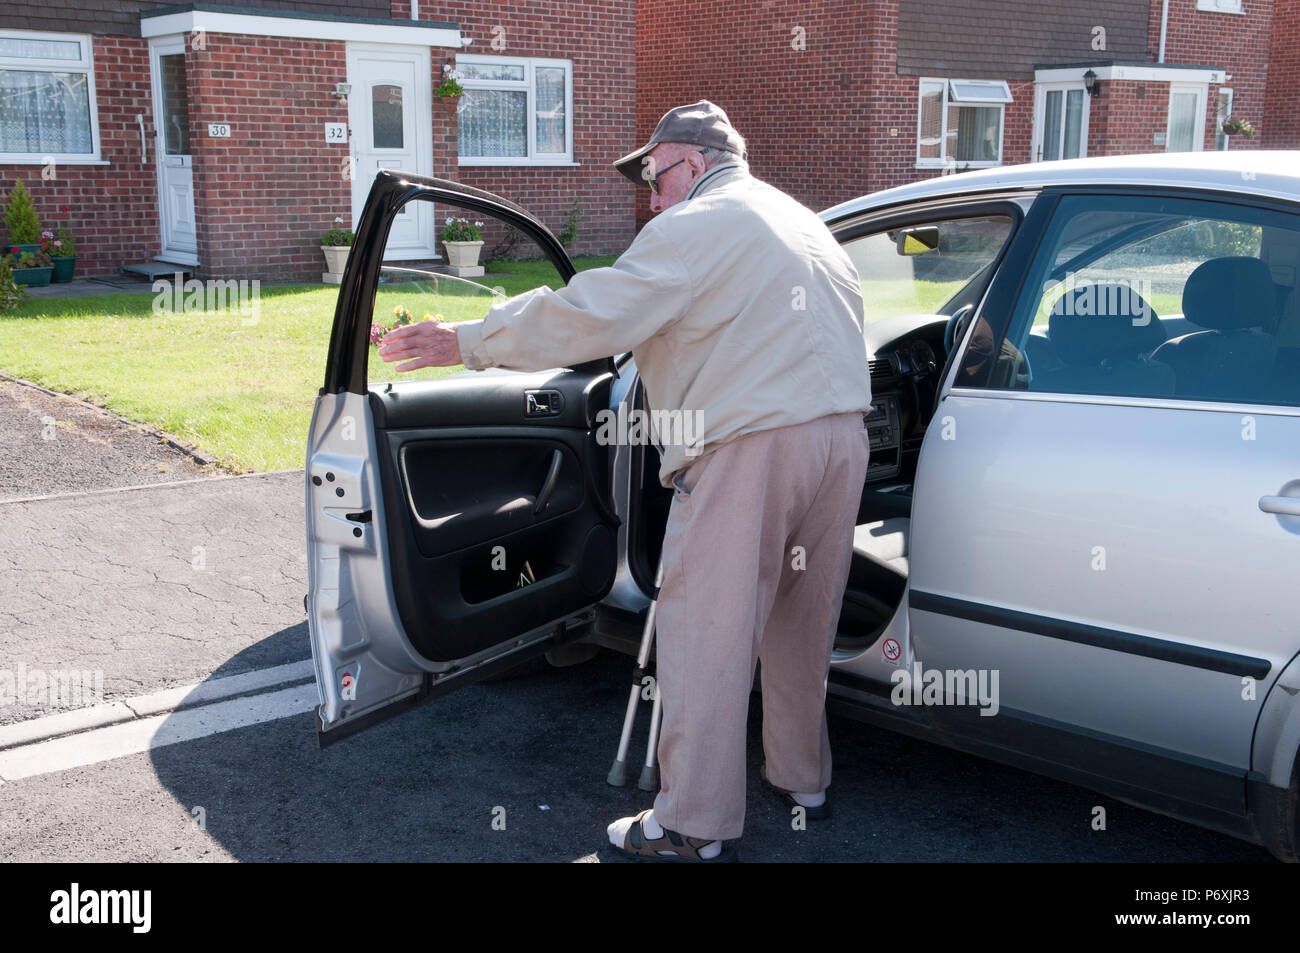 Altere Menschen Kampfen In Dem Auto Zu Erhalten Stockfotografie Alamy